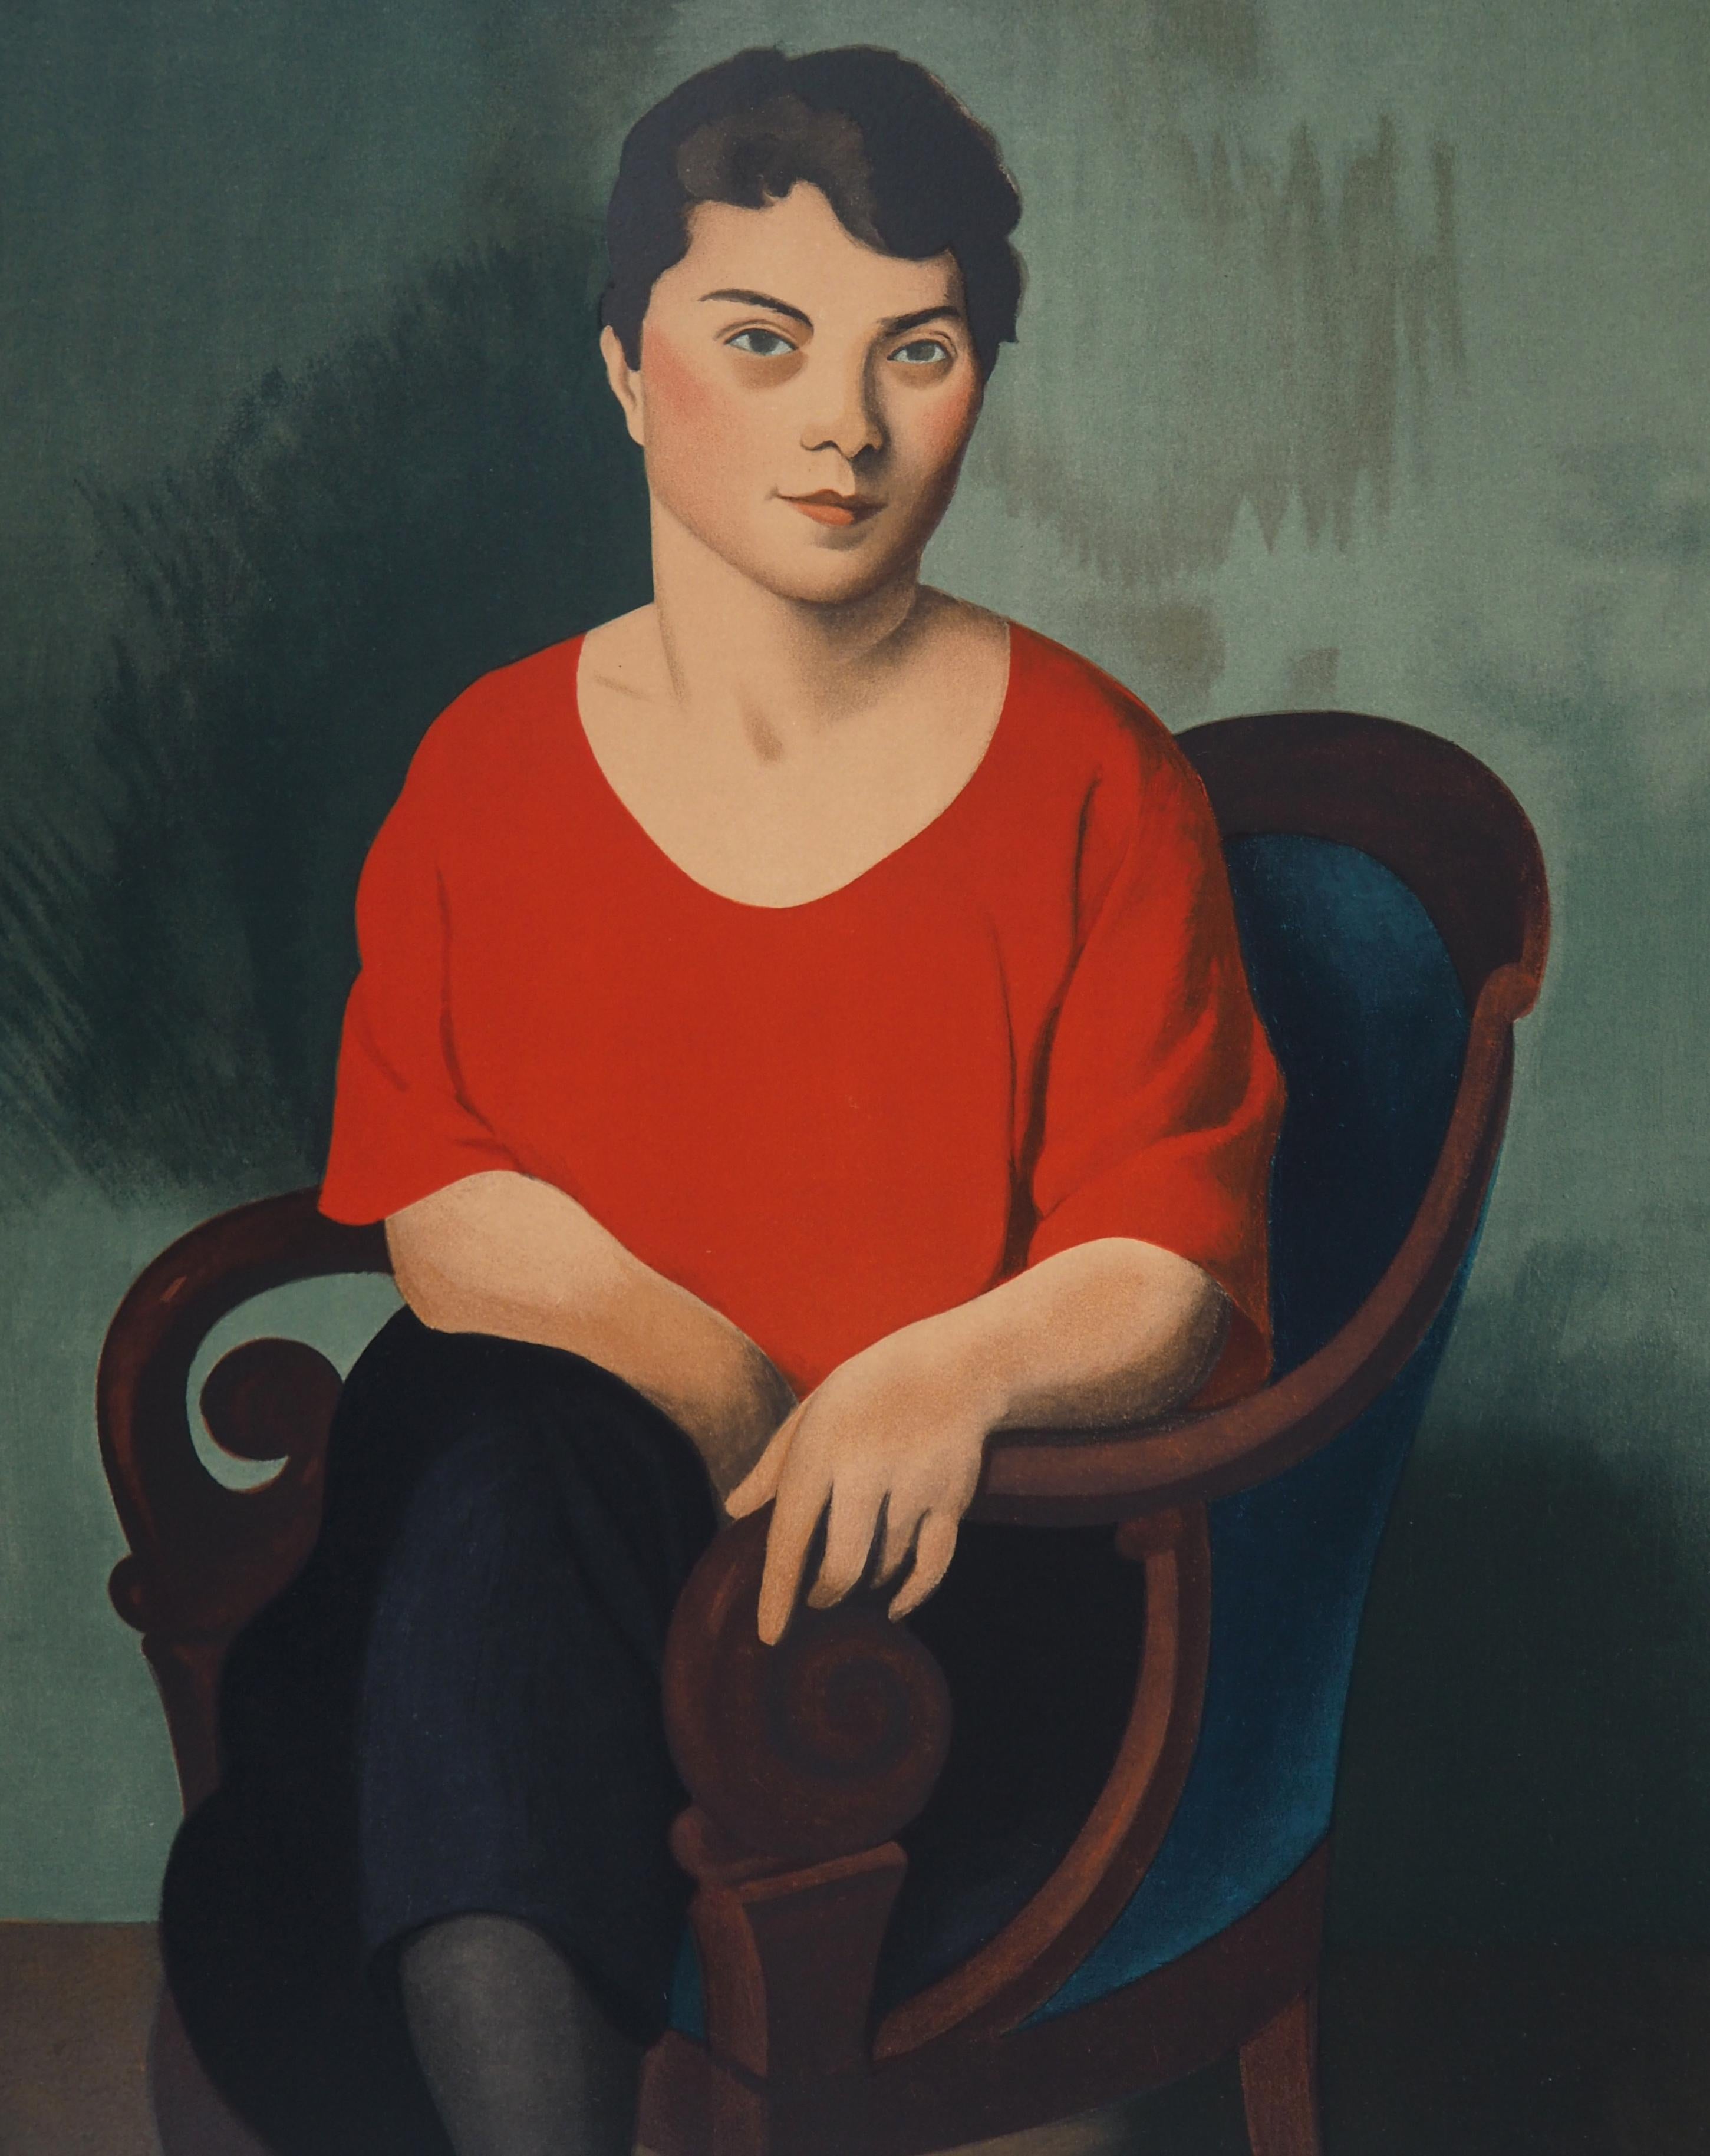 Femme avec un pull rouge - Lithographie, Mourlot - Moderne Print par Roger de la Fresnaye